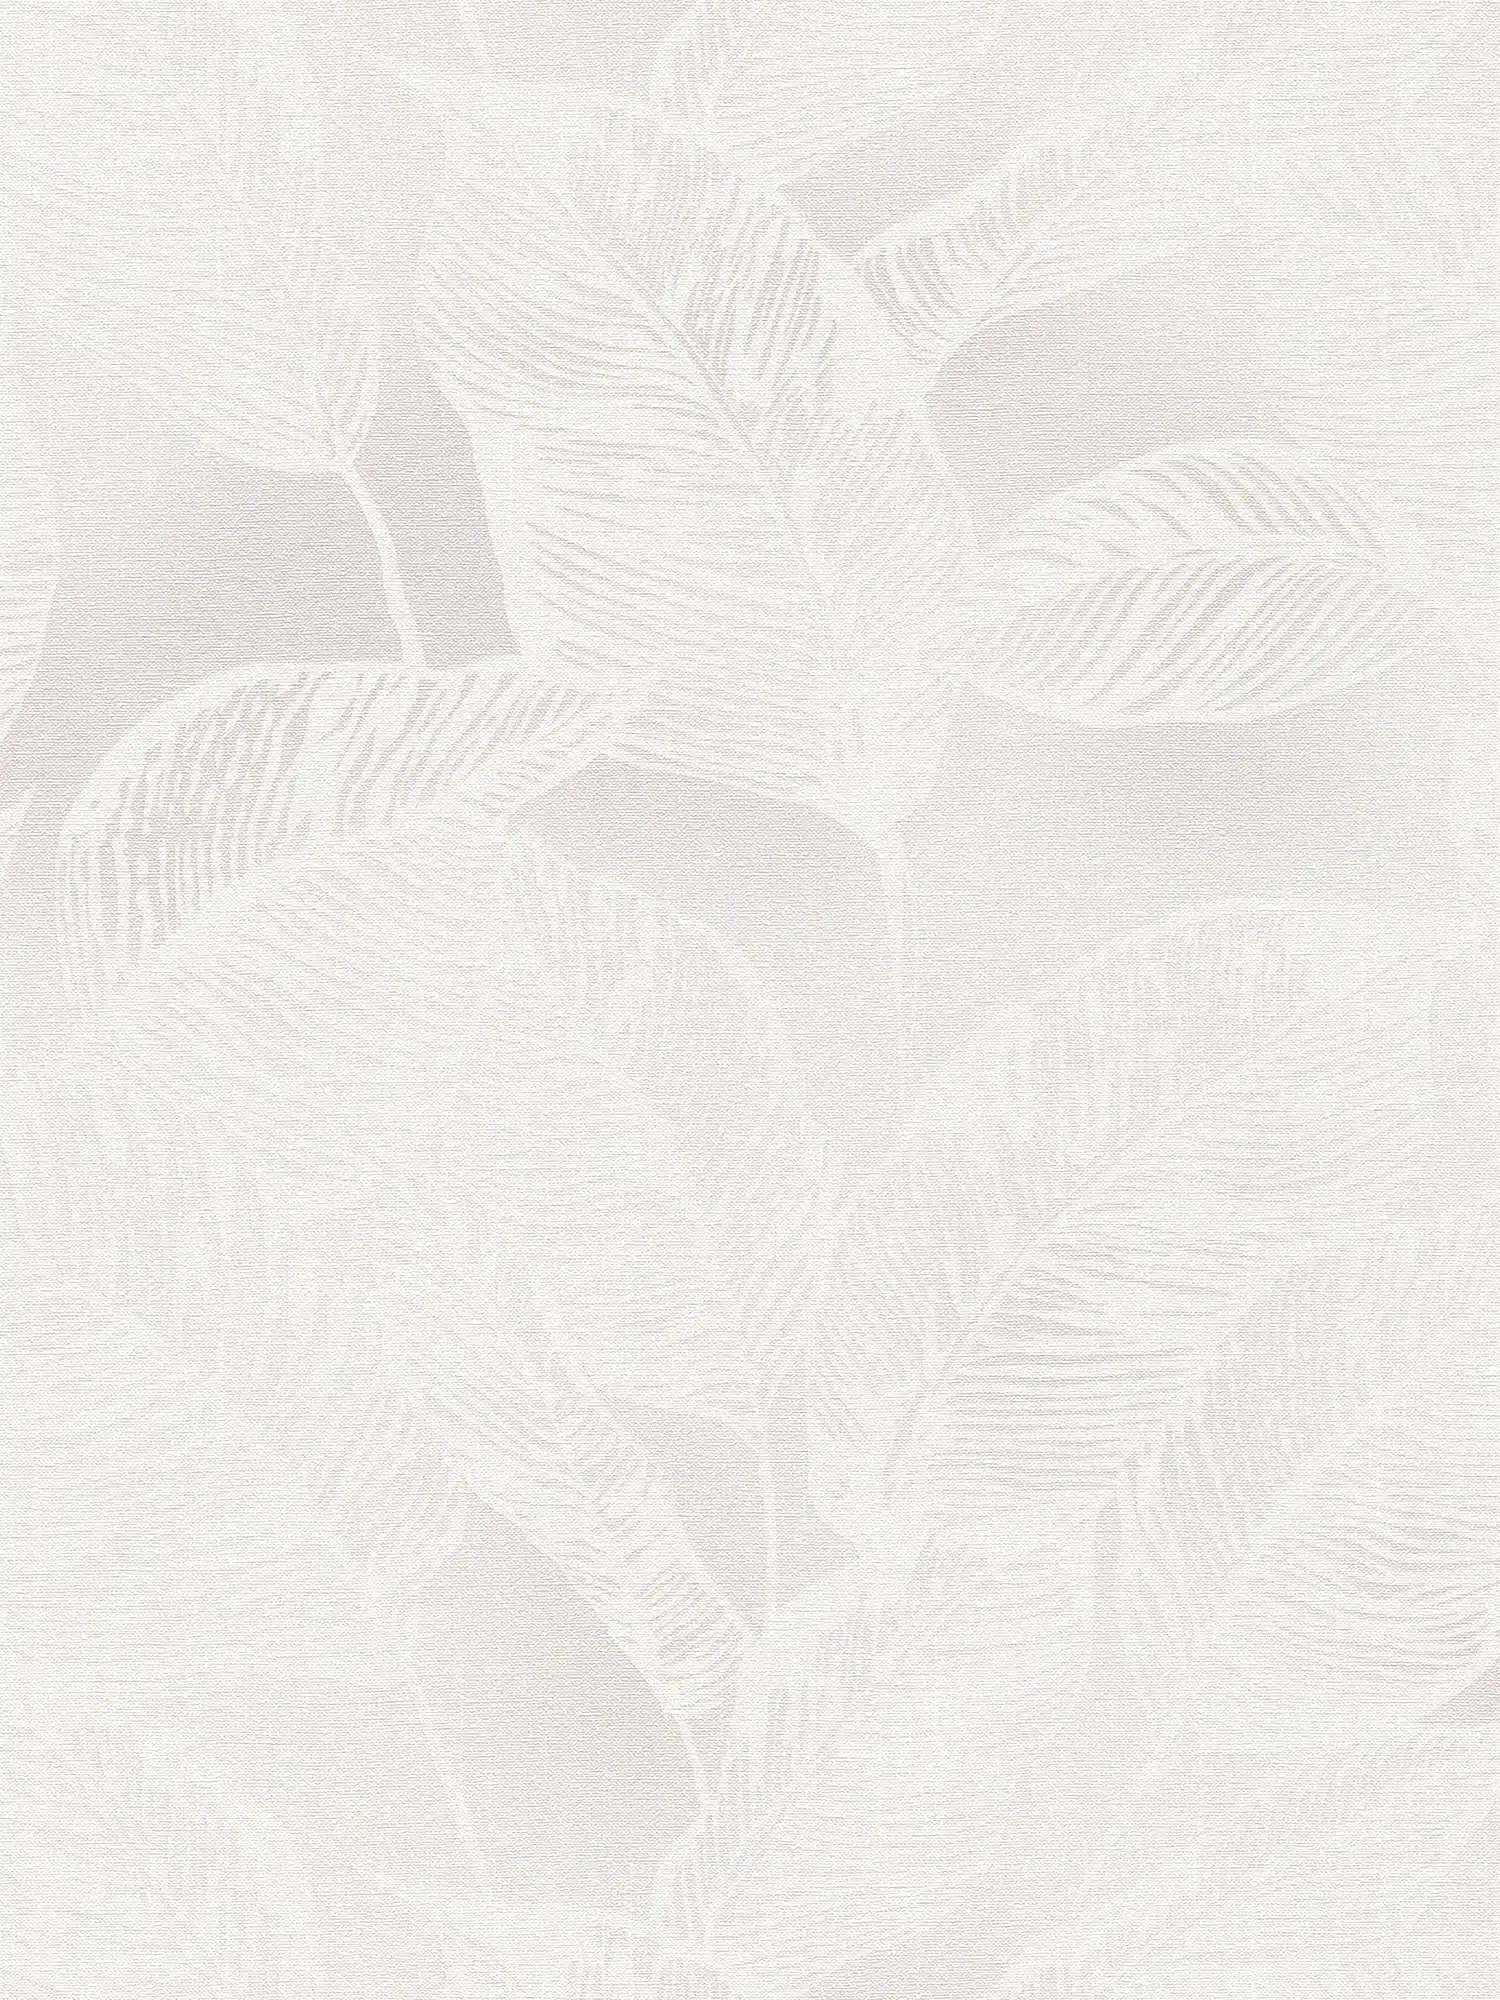 Vliesbehang met bladeren PVC-vrij - wit, grijs
